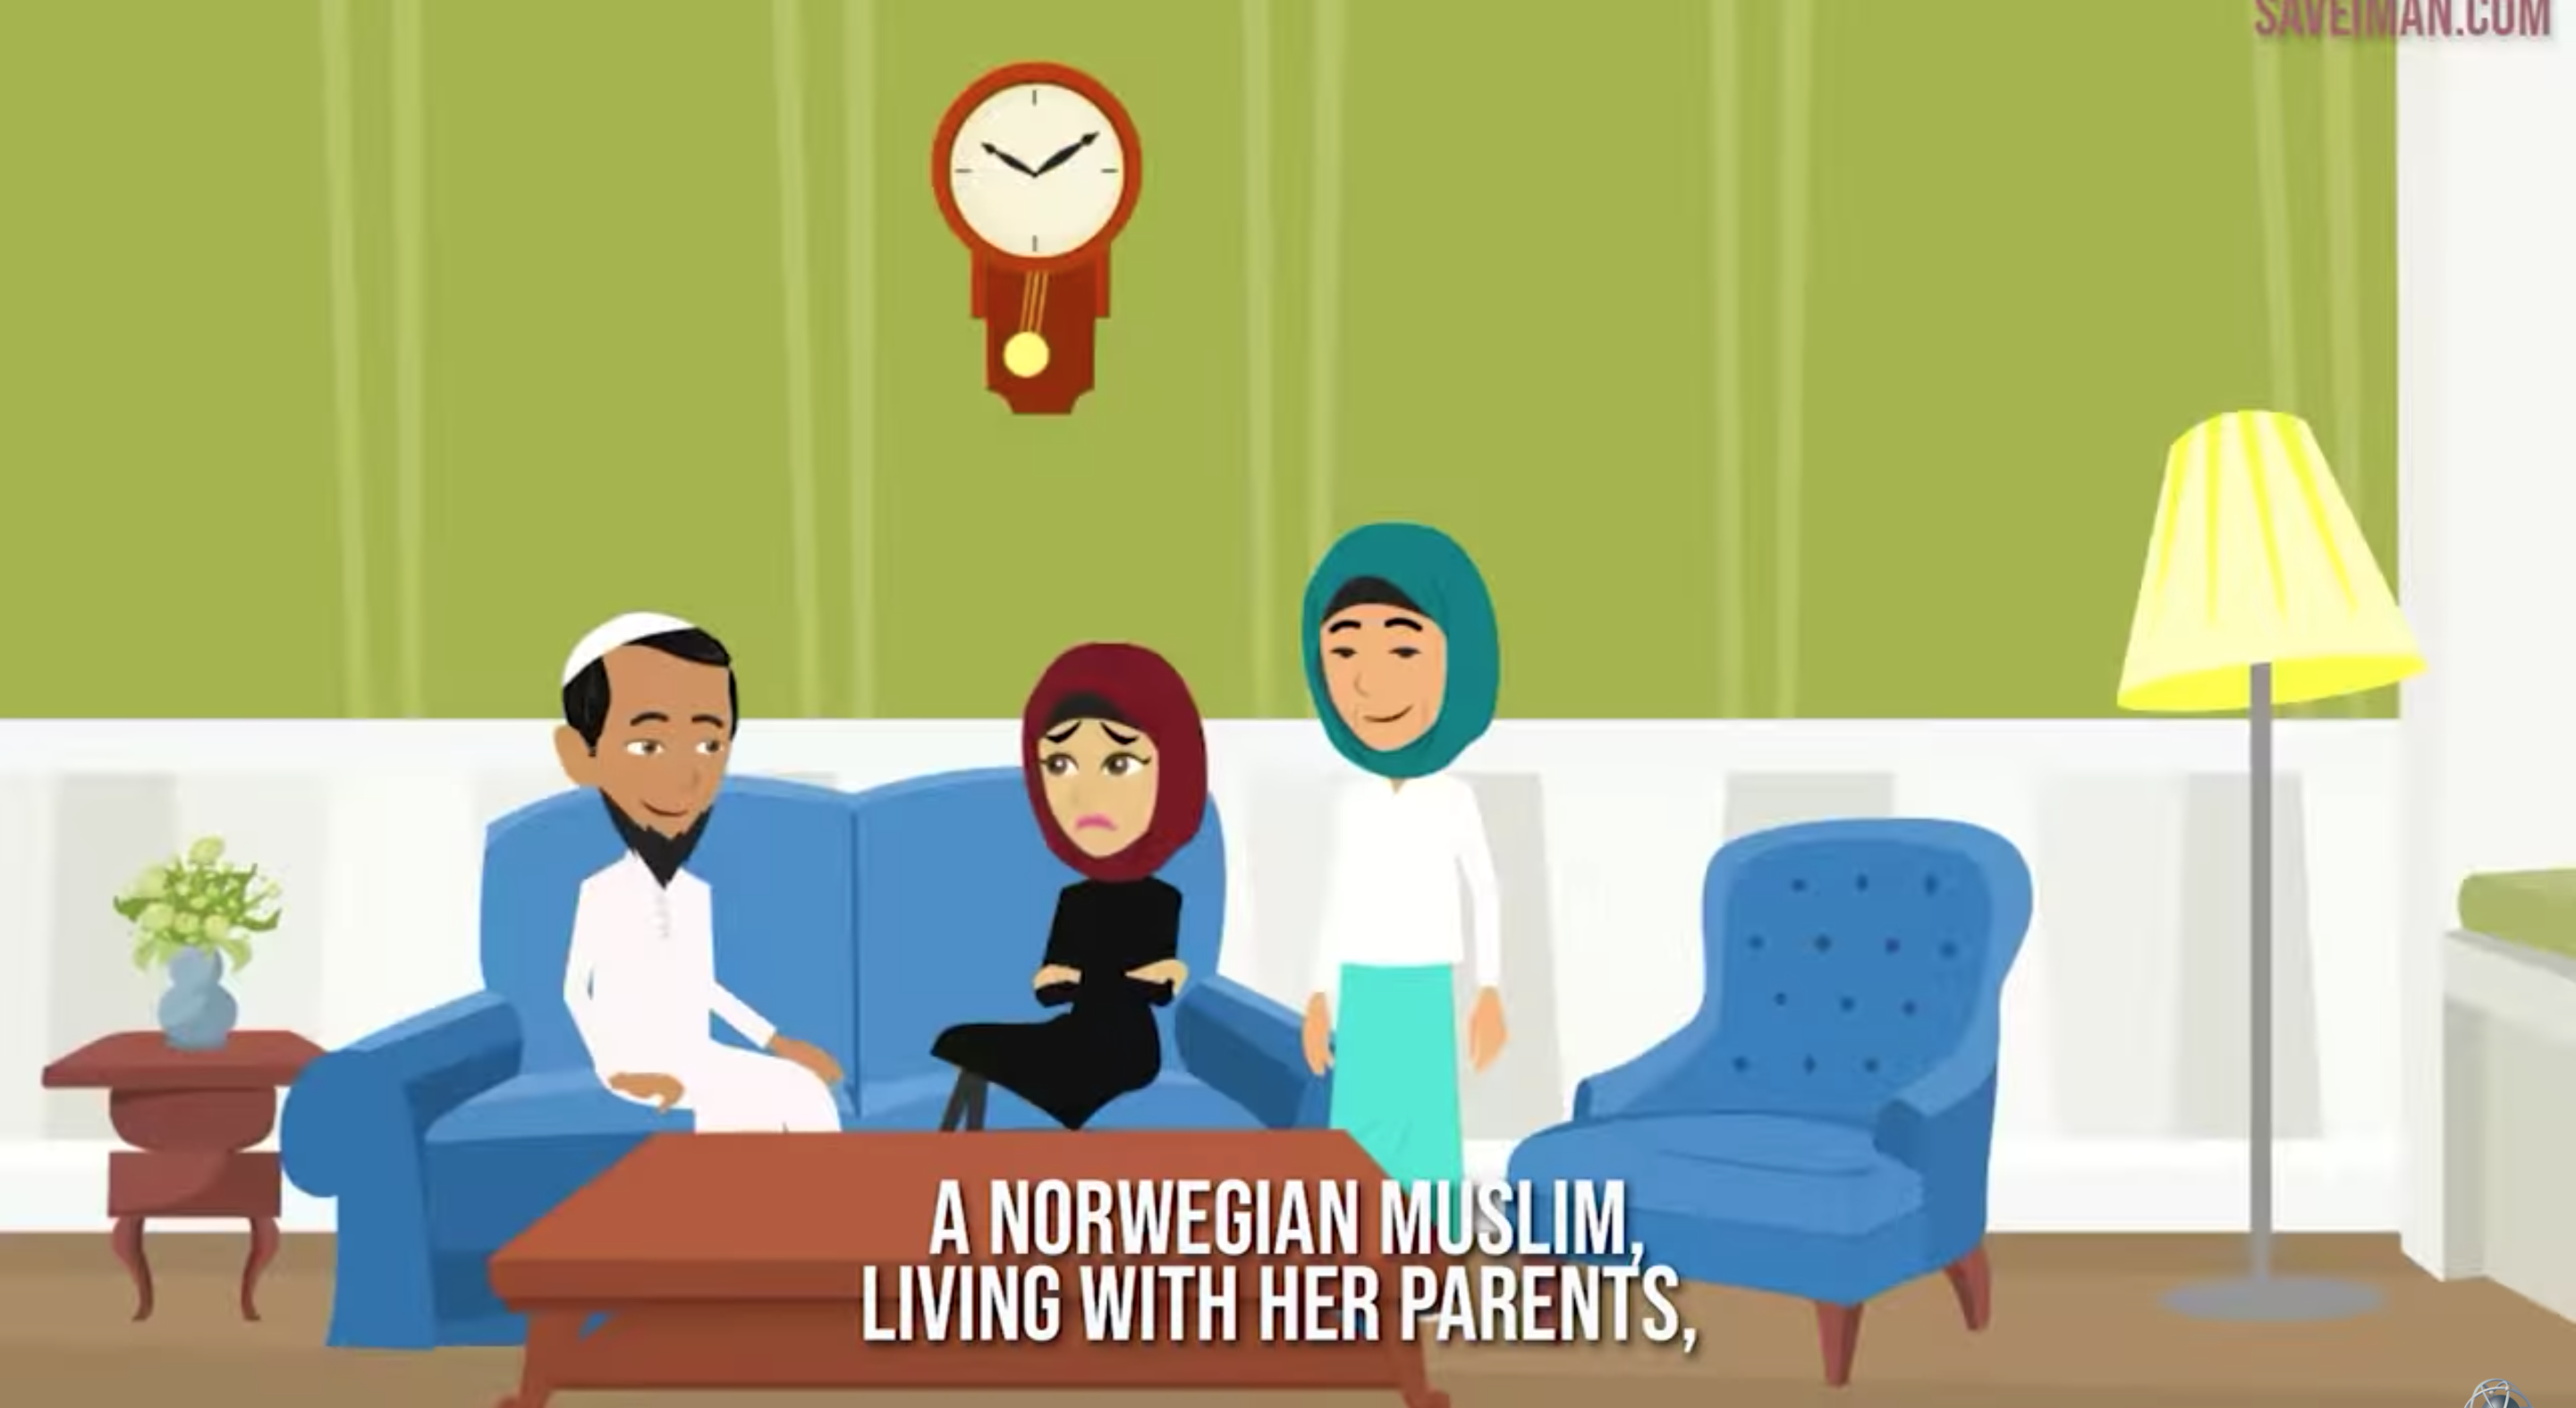 Muslimske profiler mener innsamlingsaksjon fra Islam Net svartmaler norsk virkelighet